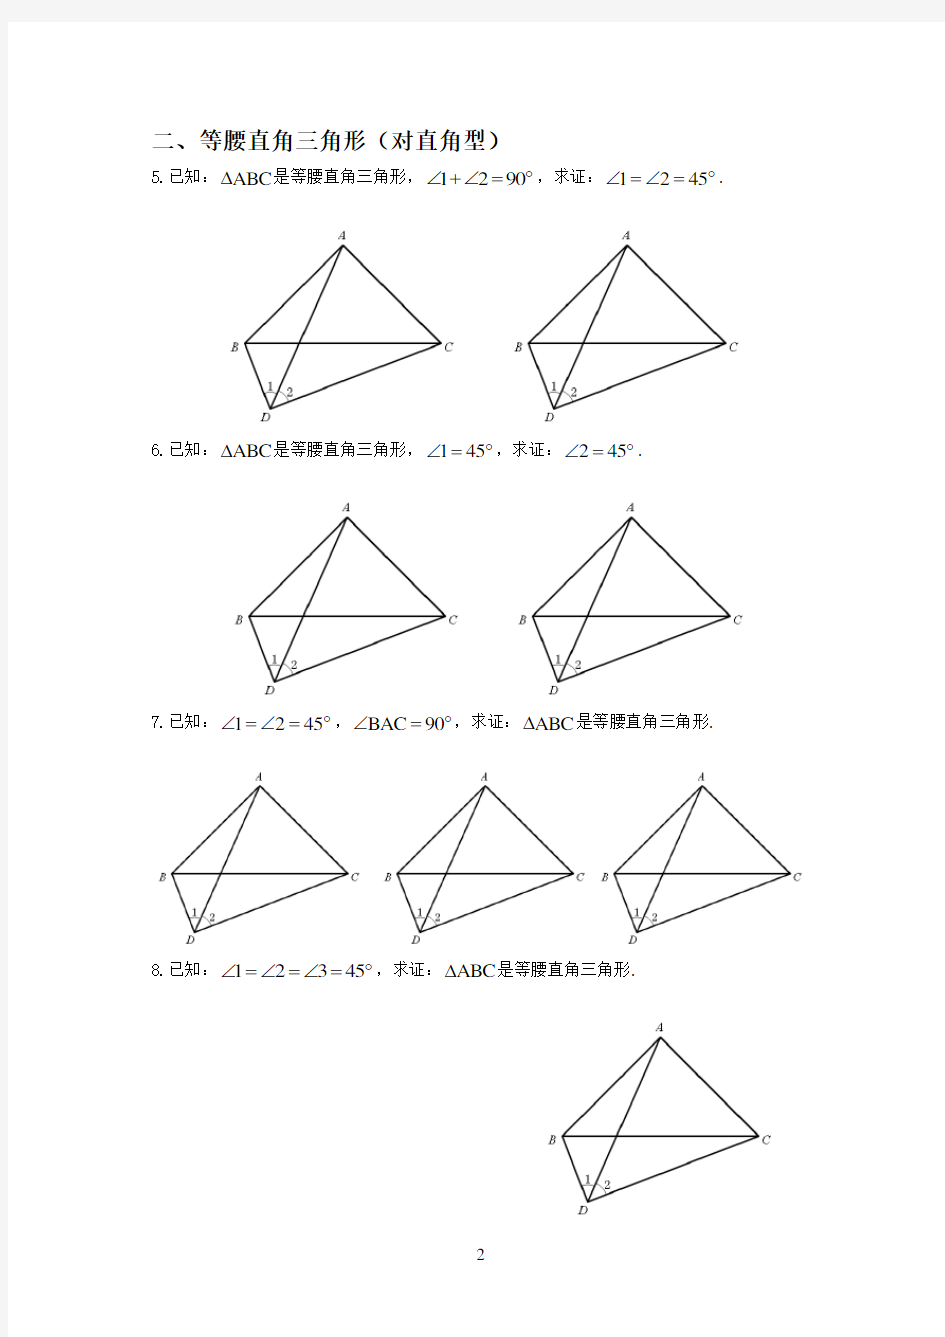 初中数学几何-典型问题中的对角互补模型